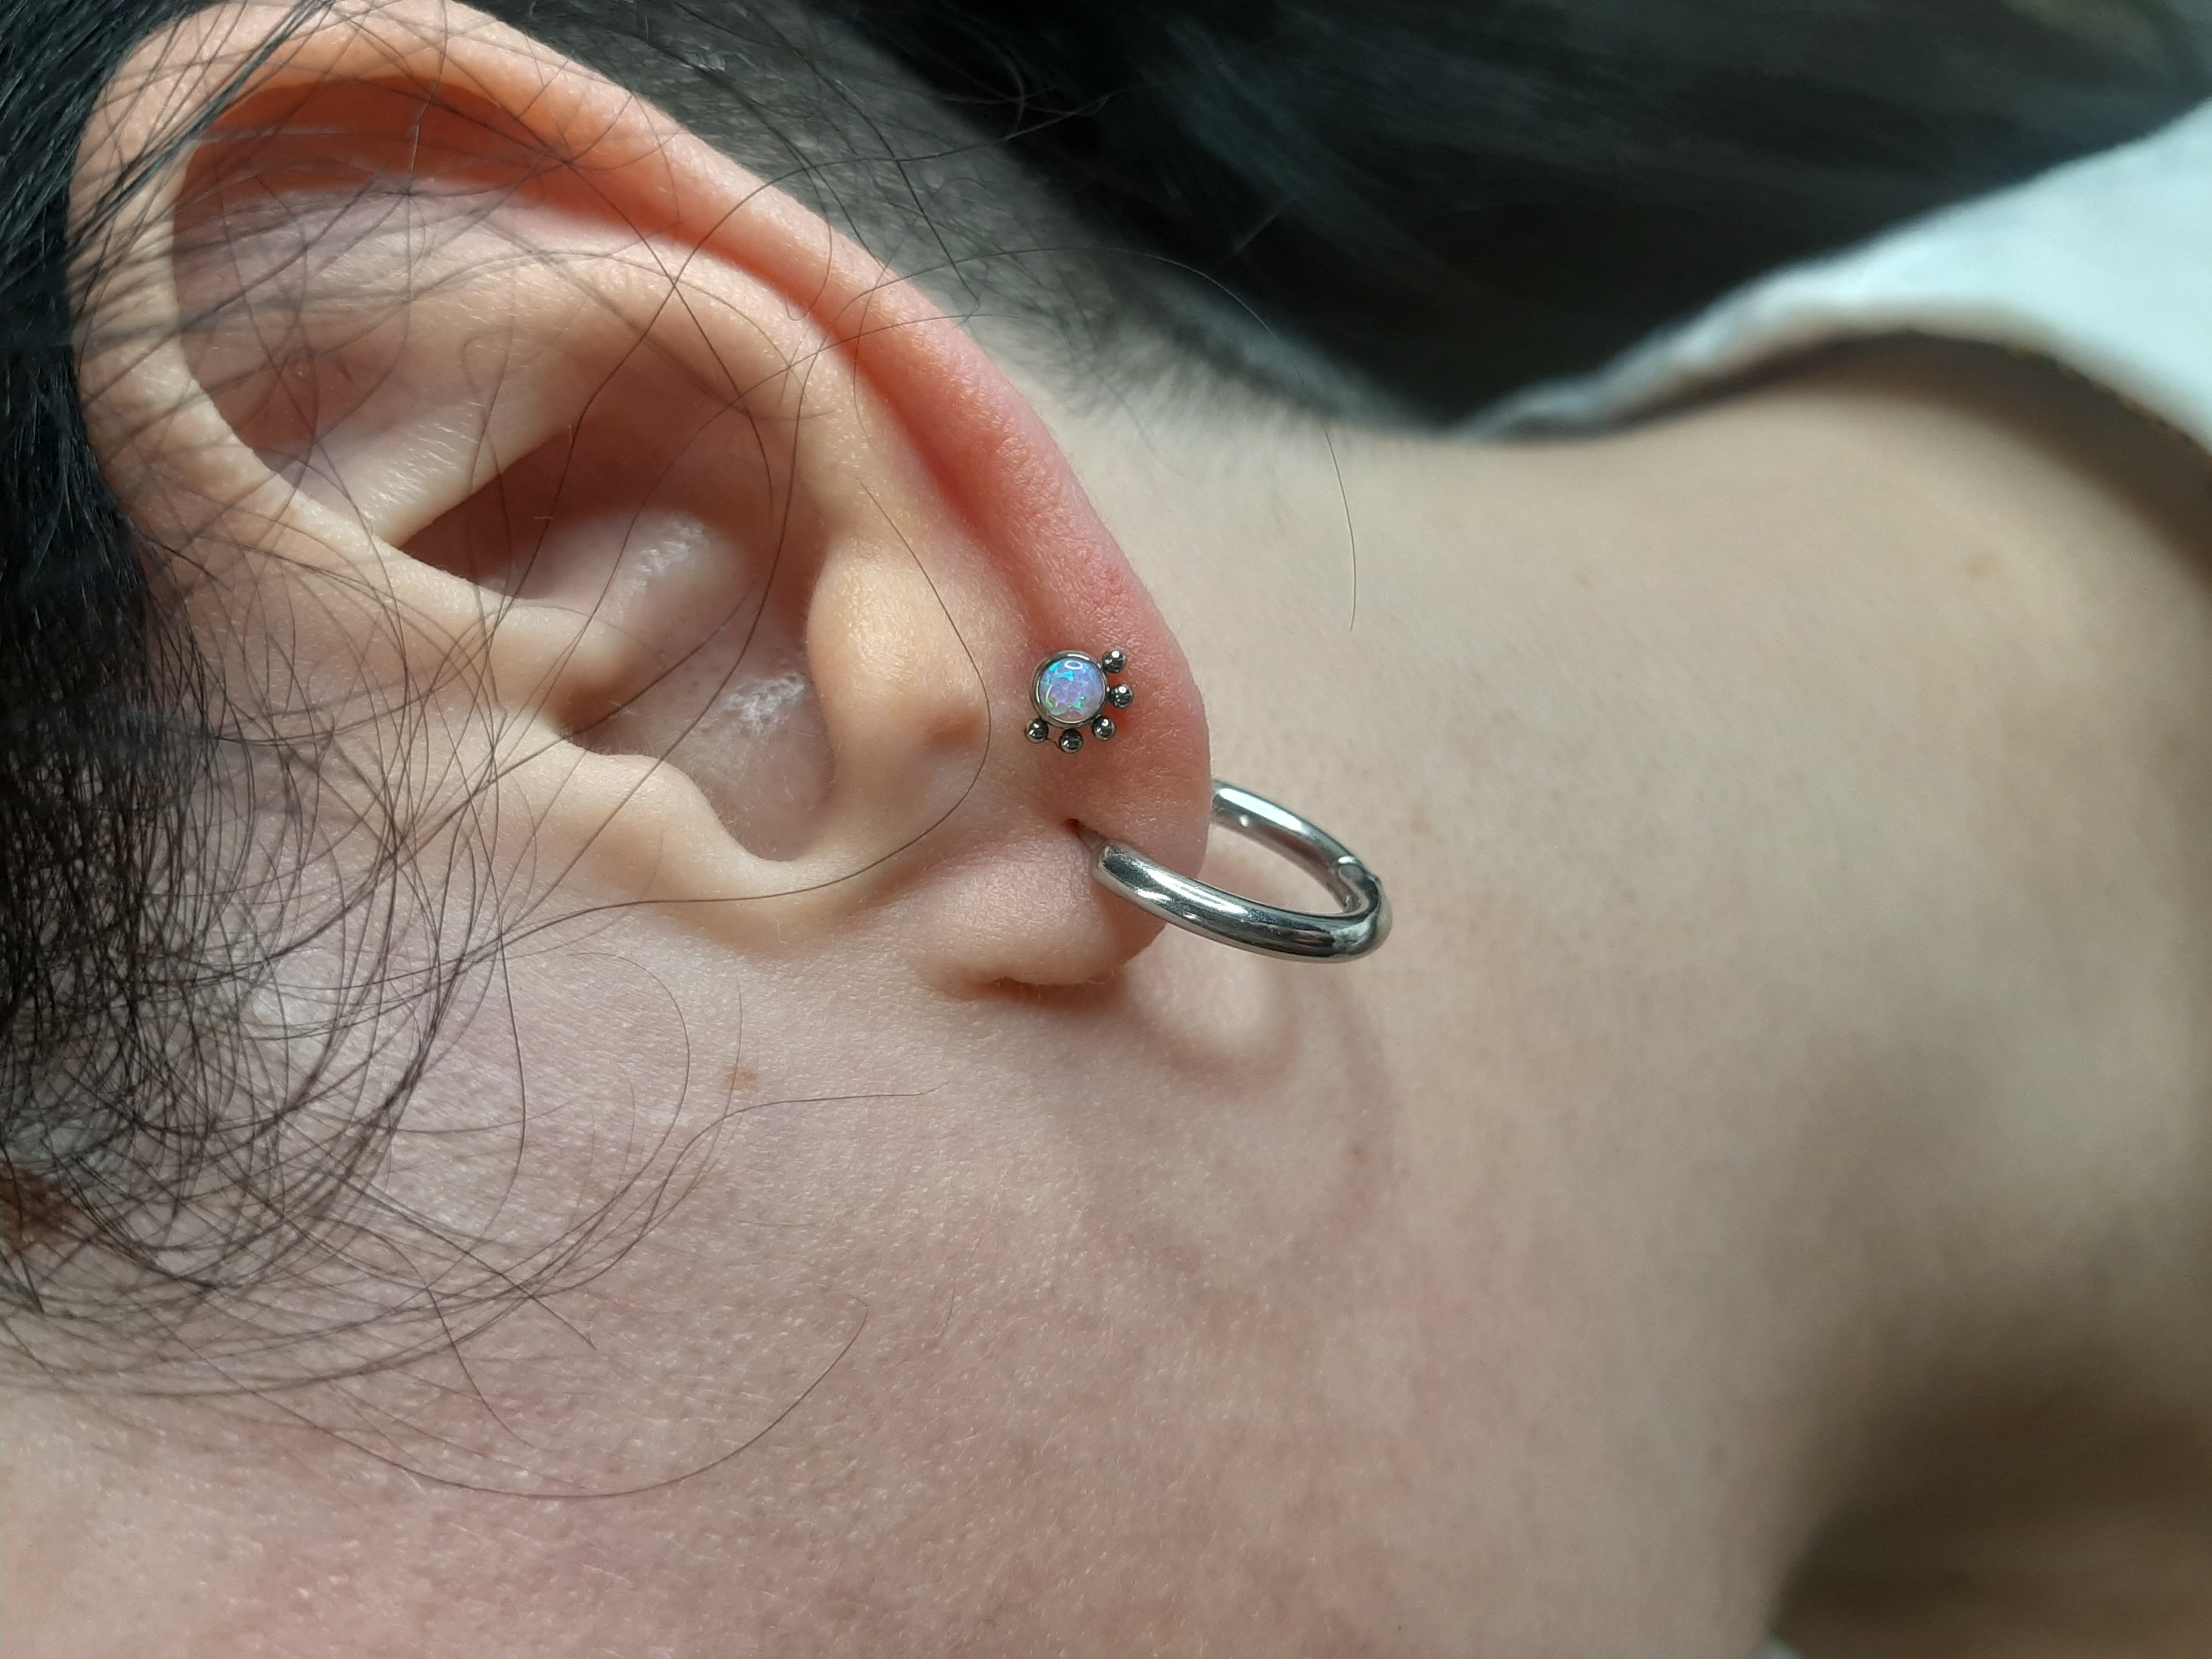 Ear upper lobe piercing